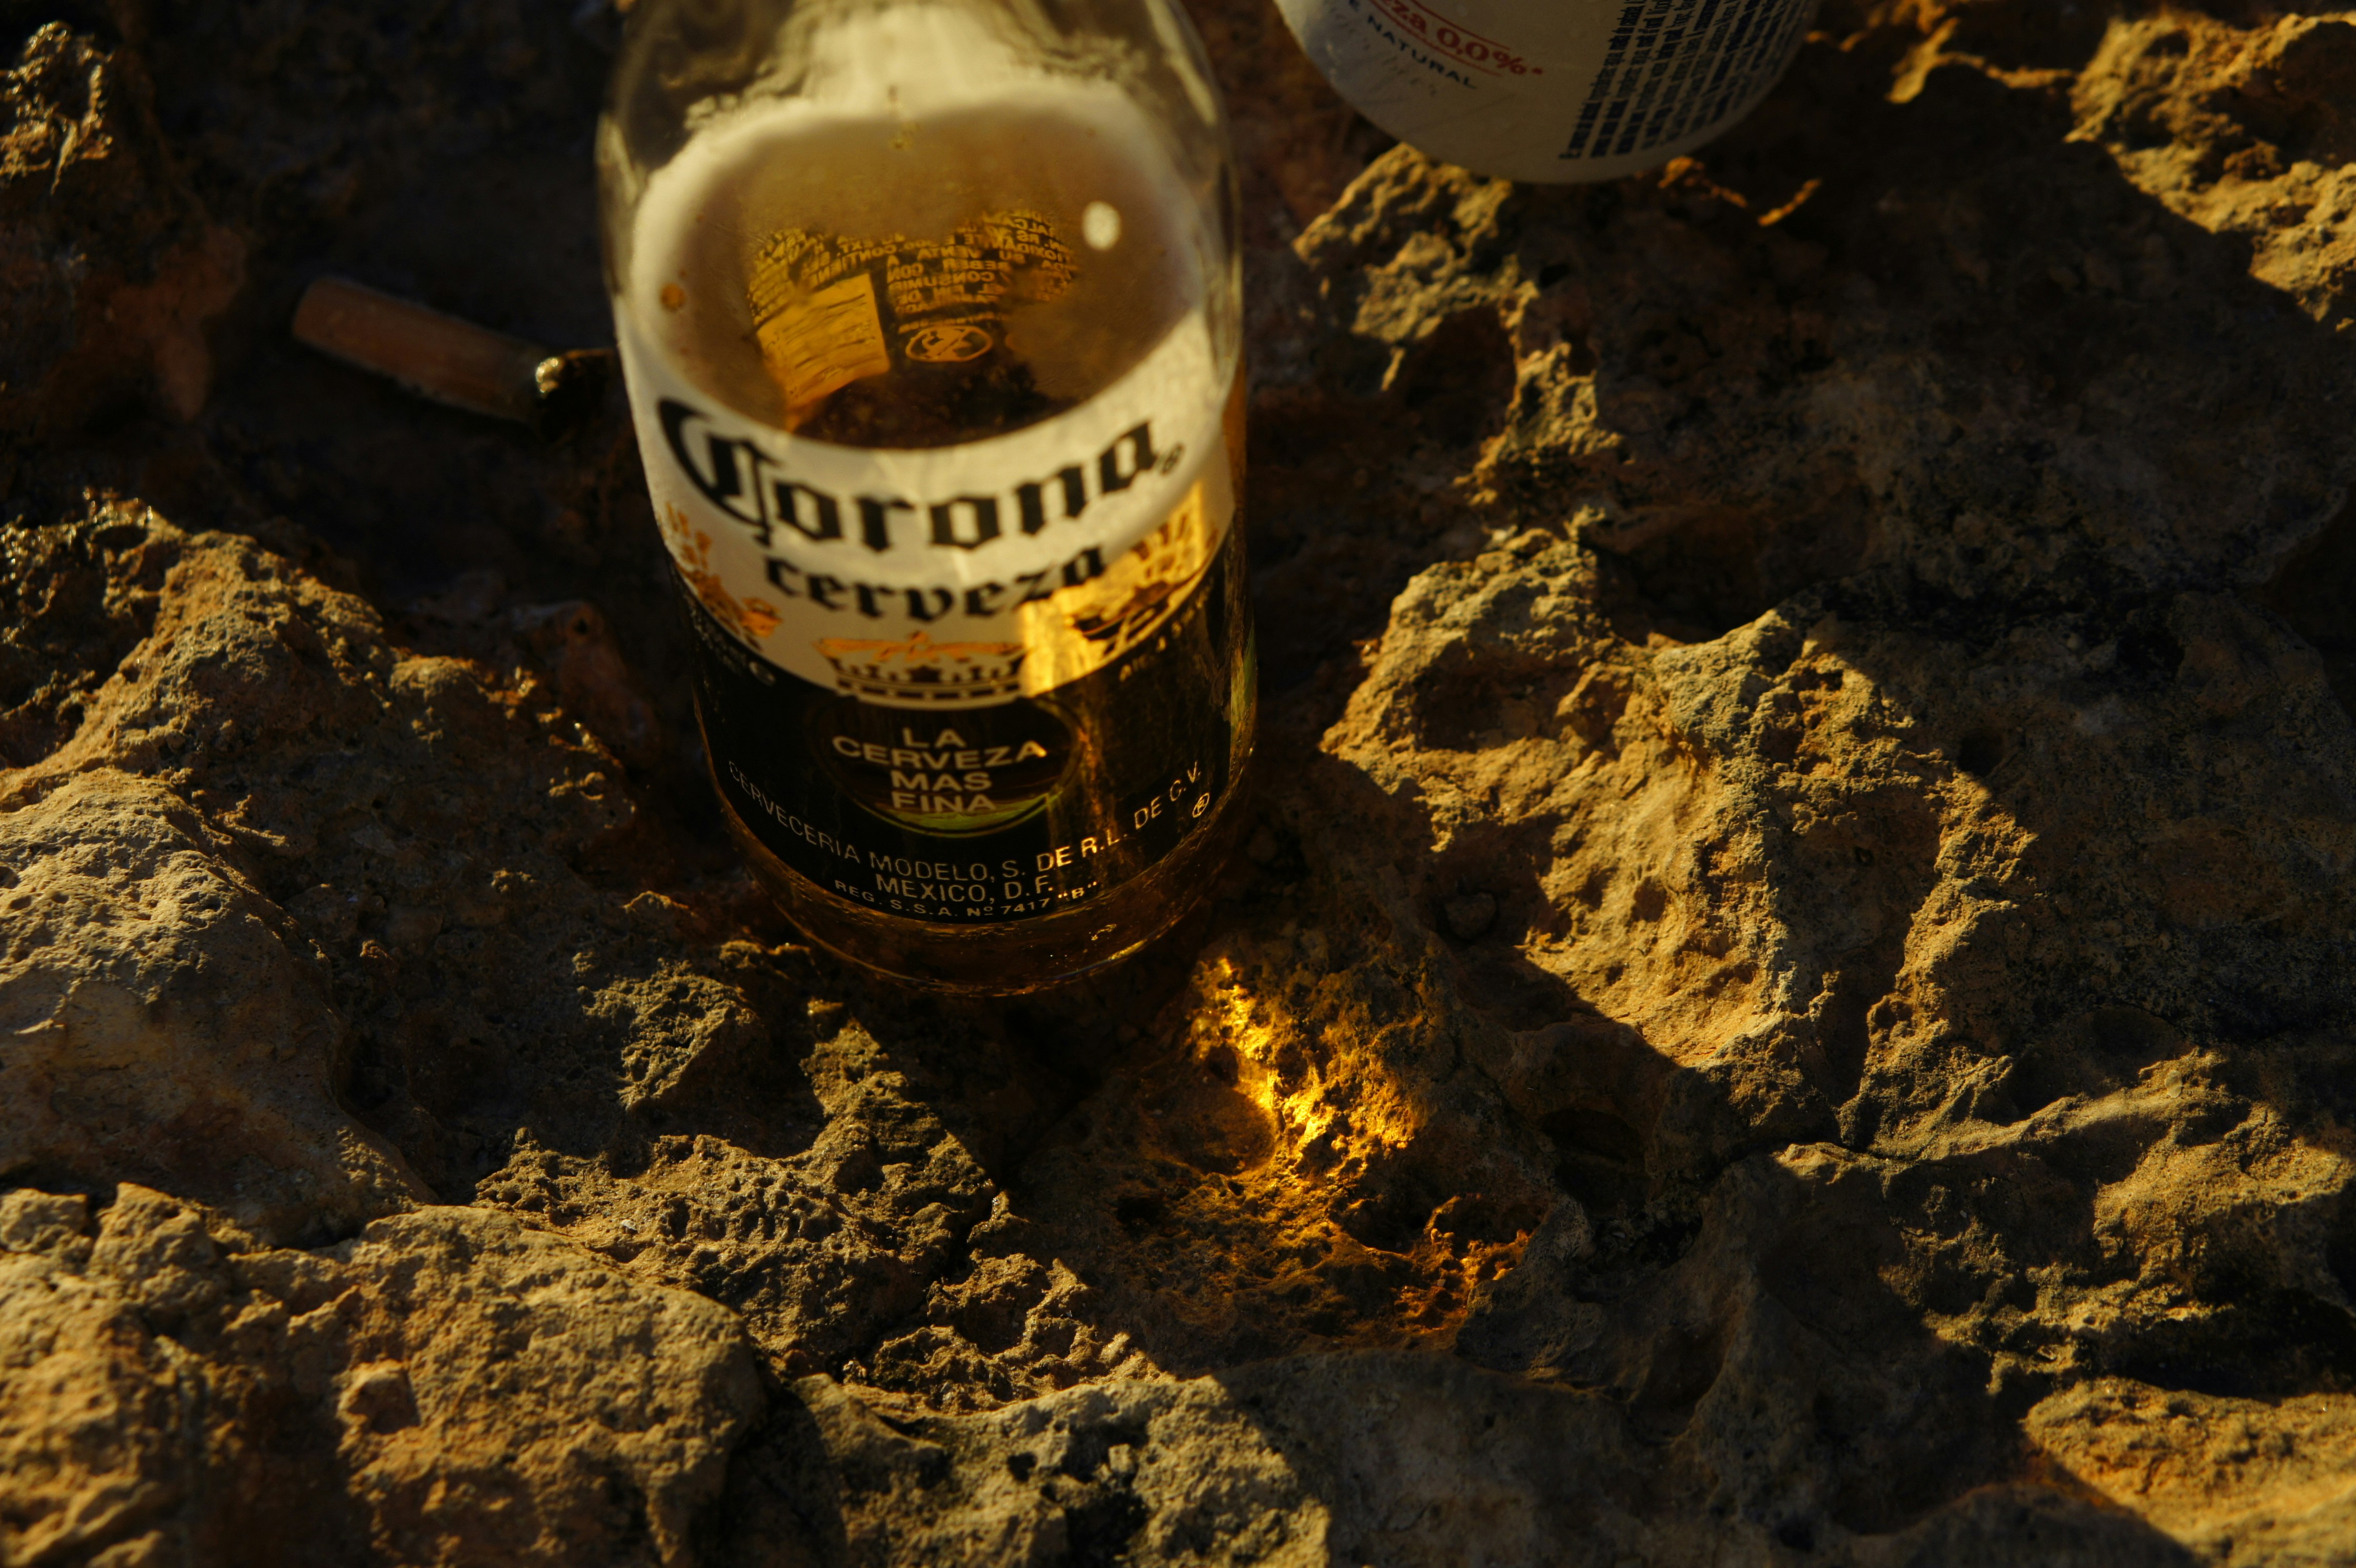 Corona beer bottle